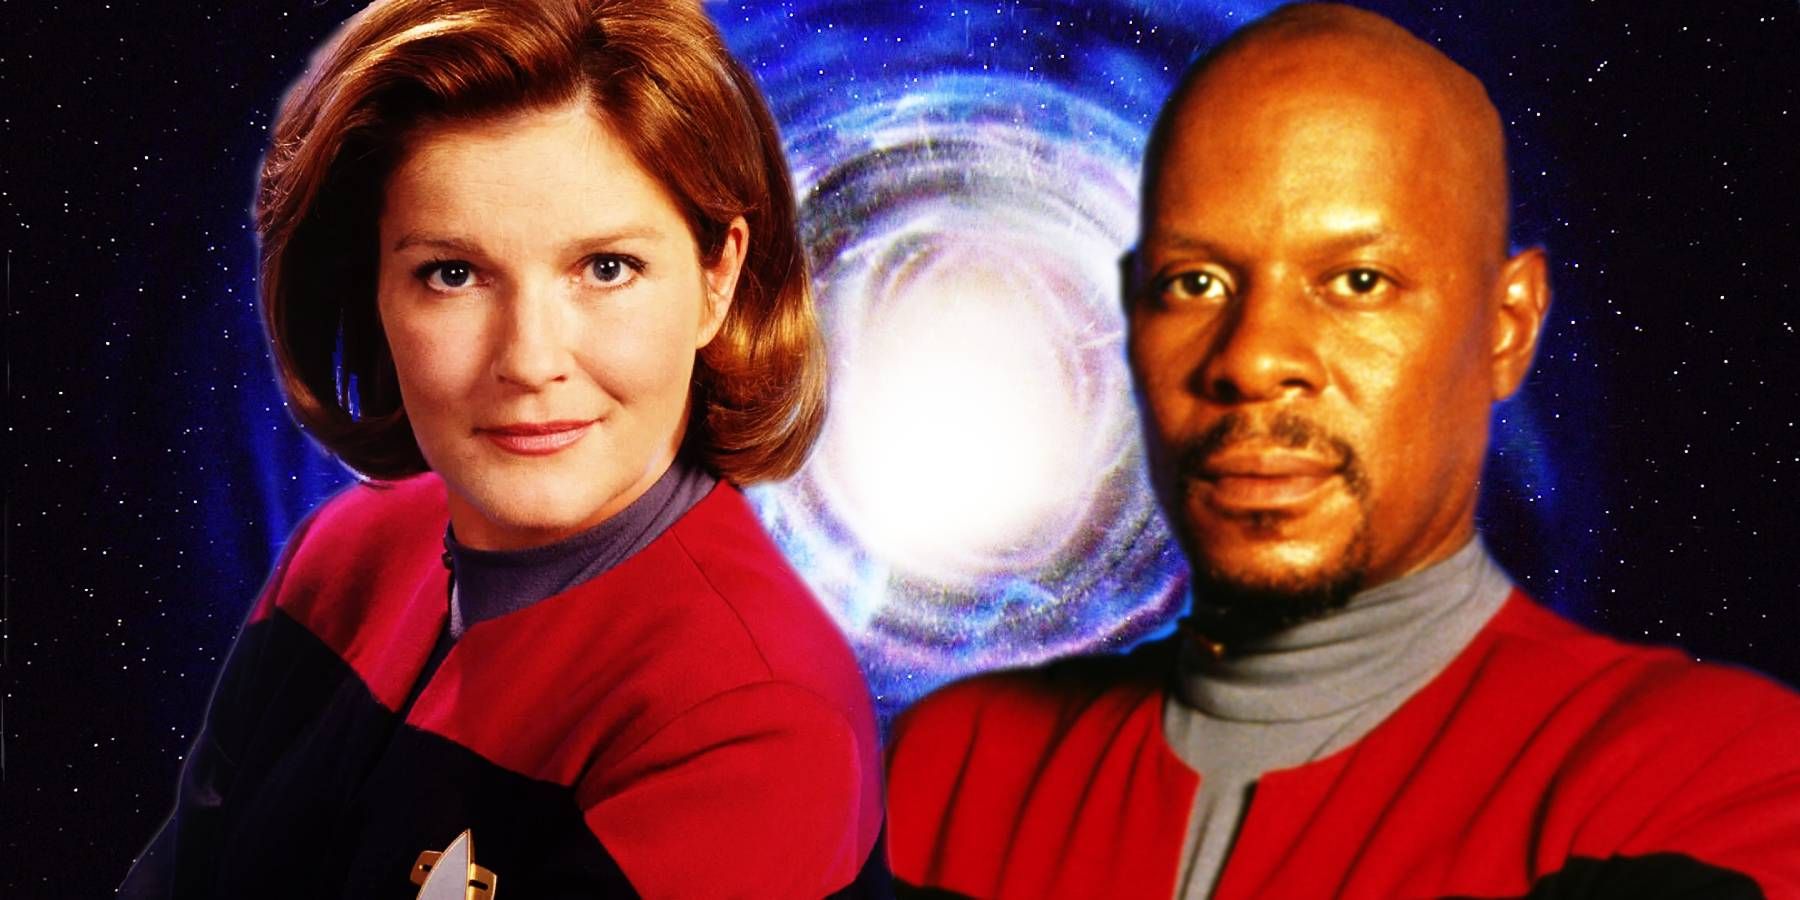 La “antiserialización” era la debilidad de la Voyager en comparación con la DS9, dice Star Trek: Discovery Creator